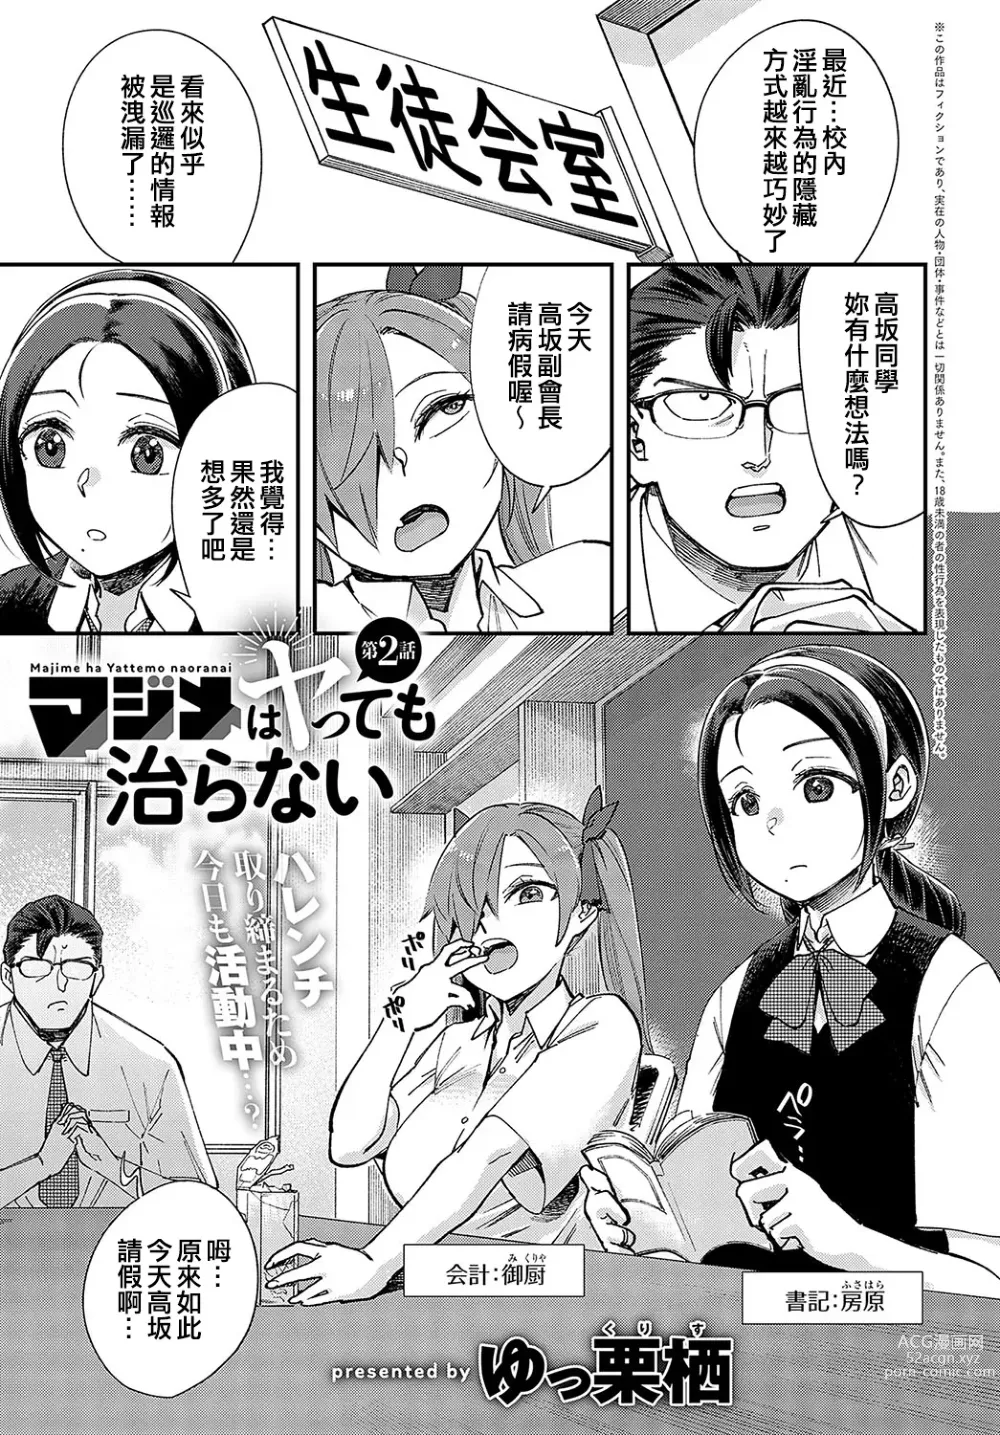 Page 1 of manga Majime wa Yattemo Naoranai Ch. 2